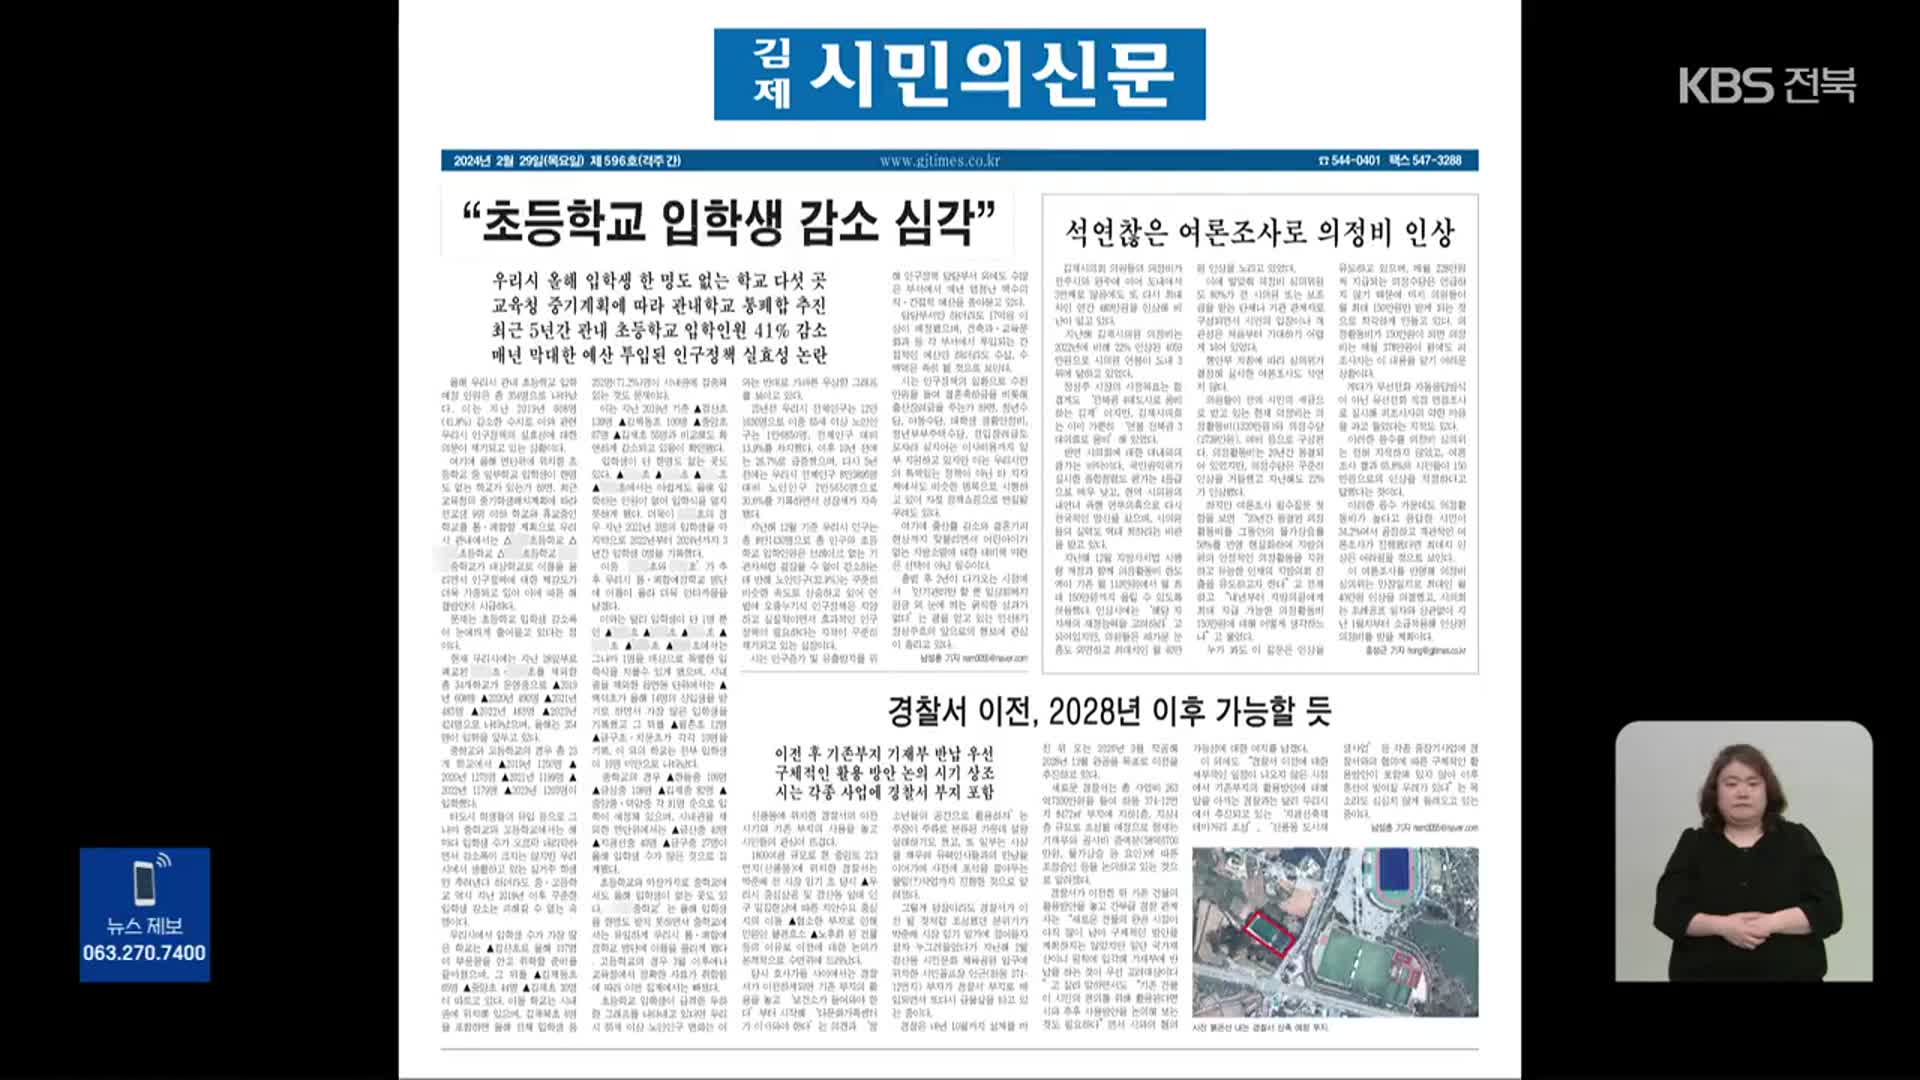 [풀뿌리K] 학령인구 감소 ‘심각’…김제·무주 실태는?